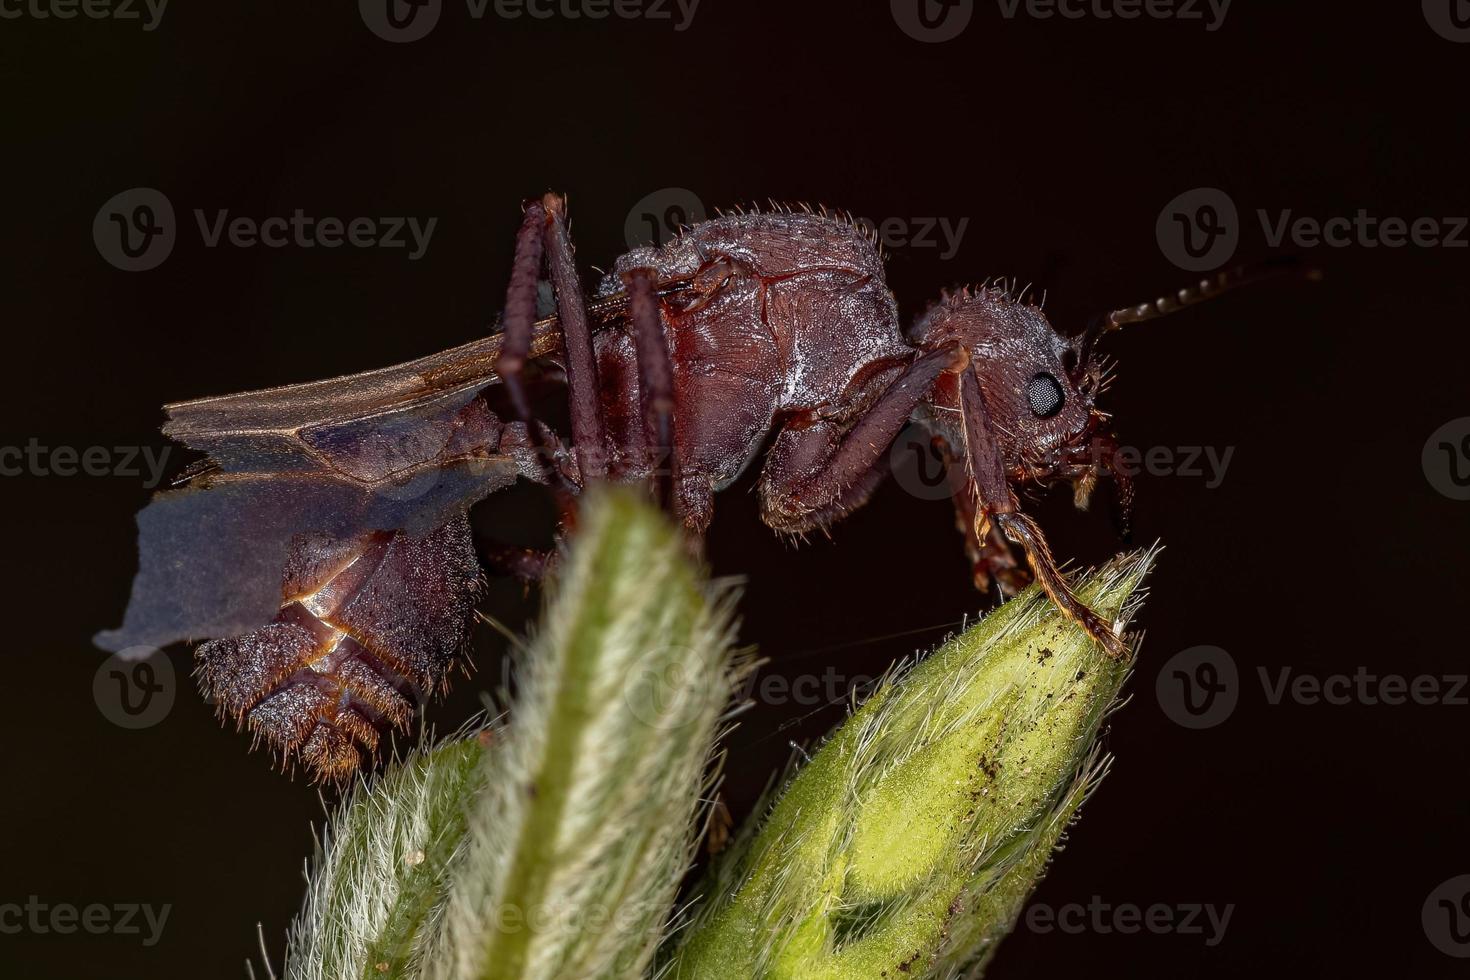 ausgewachsene weibliche Acromyrmex-Blattschneiderkönigin Ameise foto